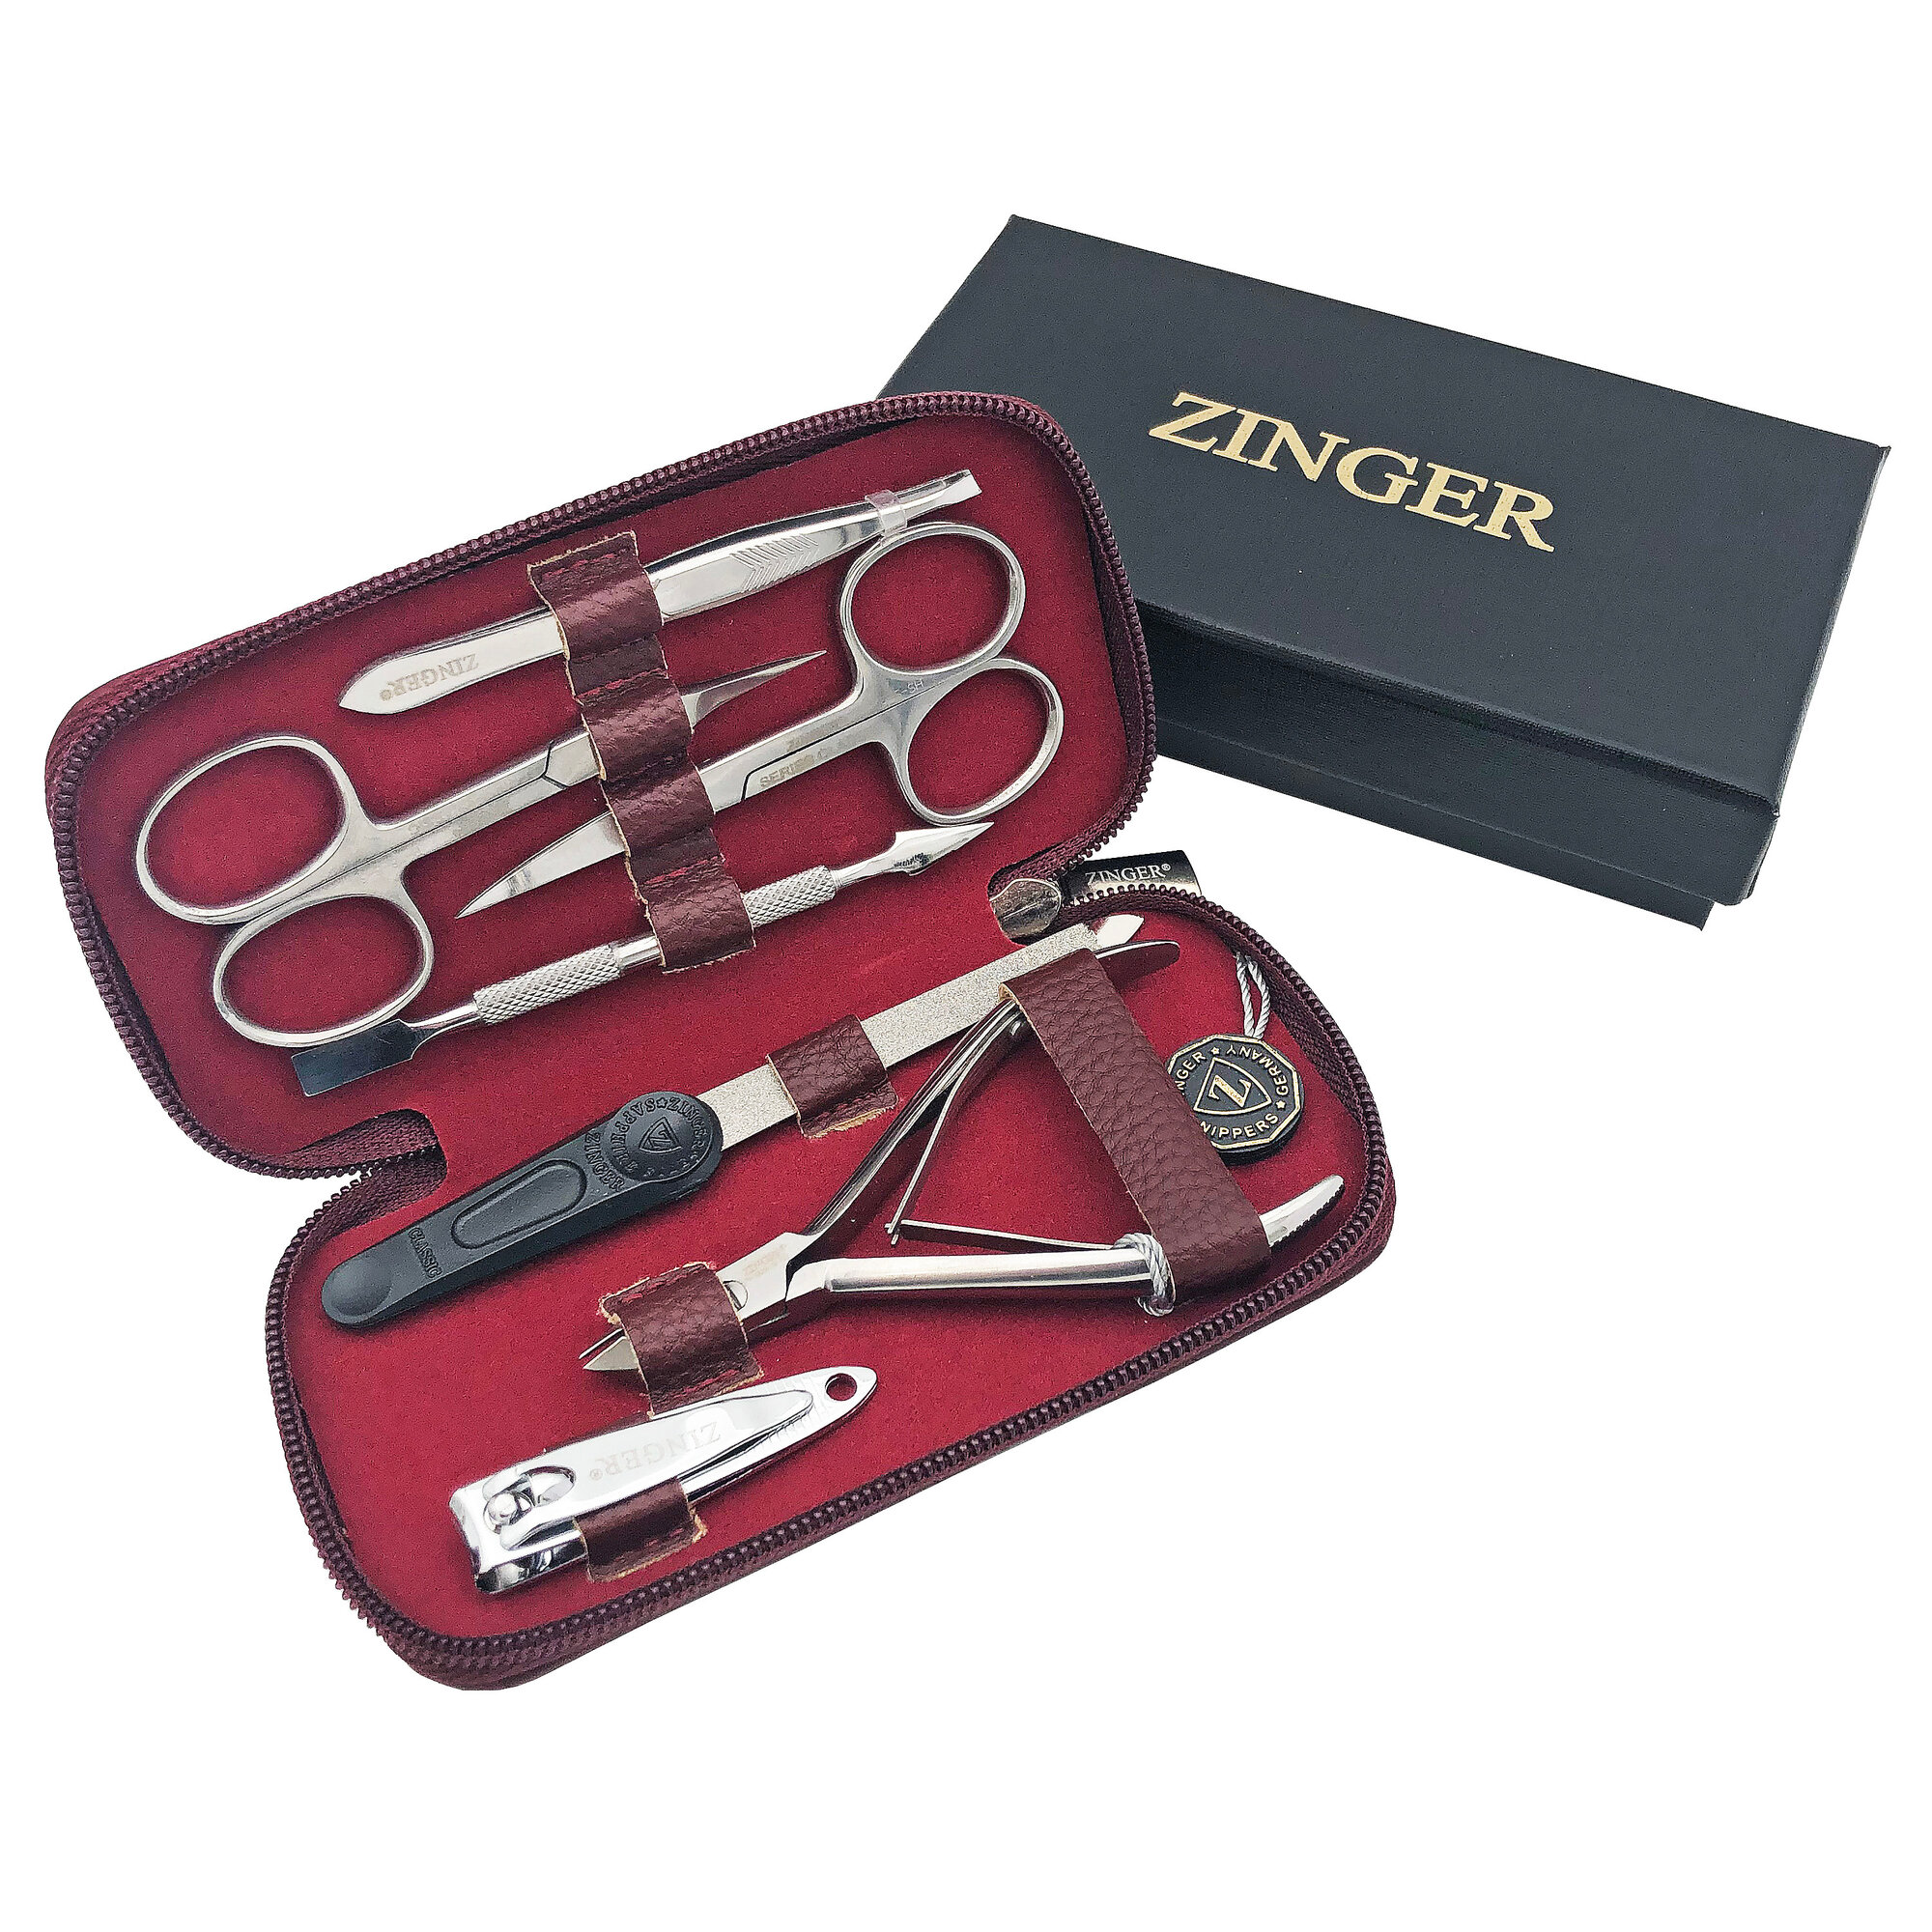 Маникюрный набор Zinger 7105, 7 предметов, серебристый/бордовый